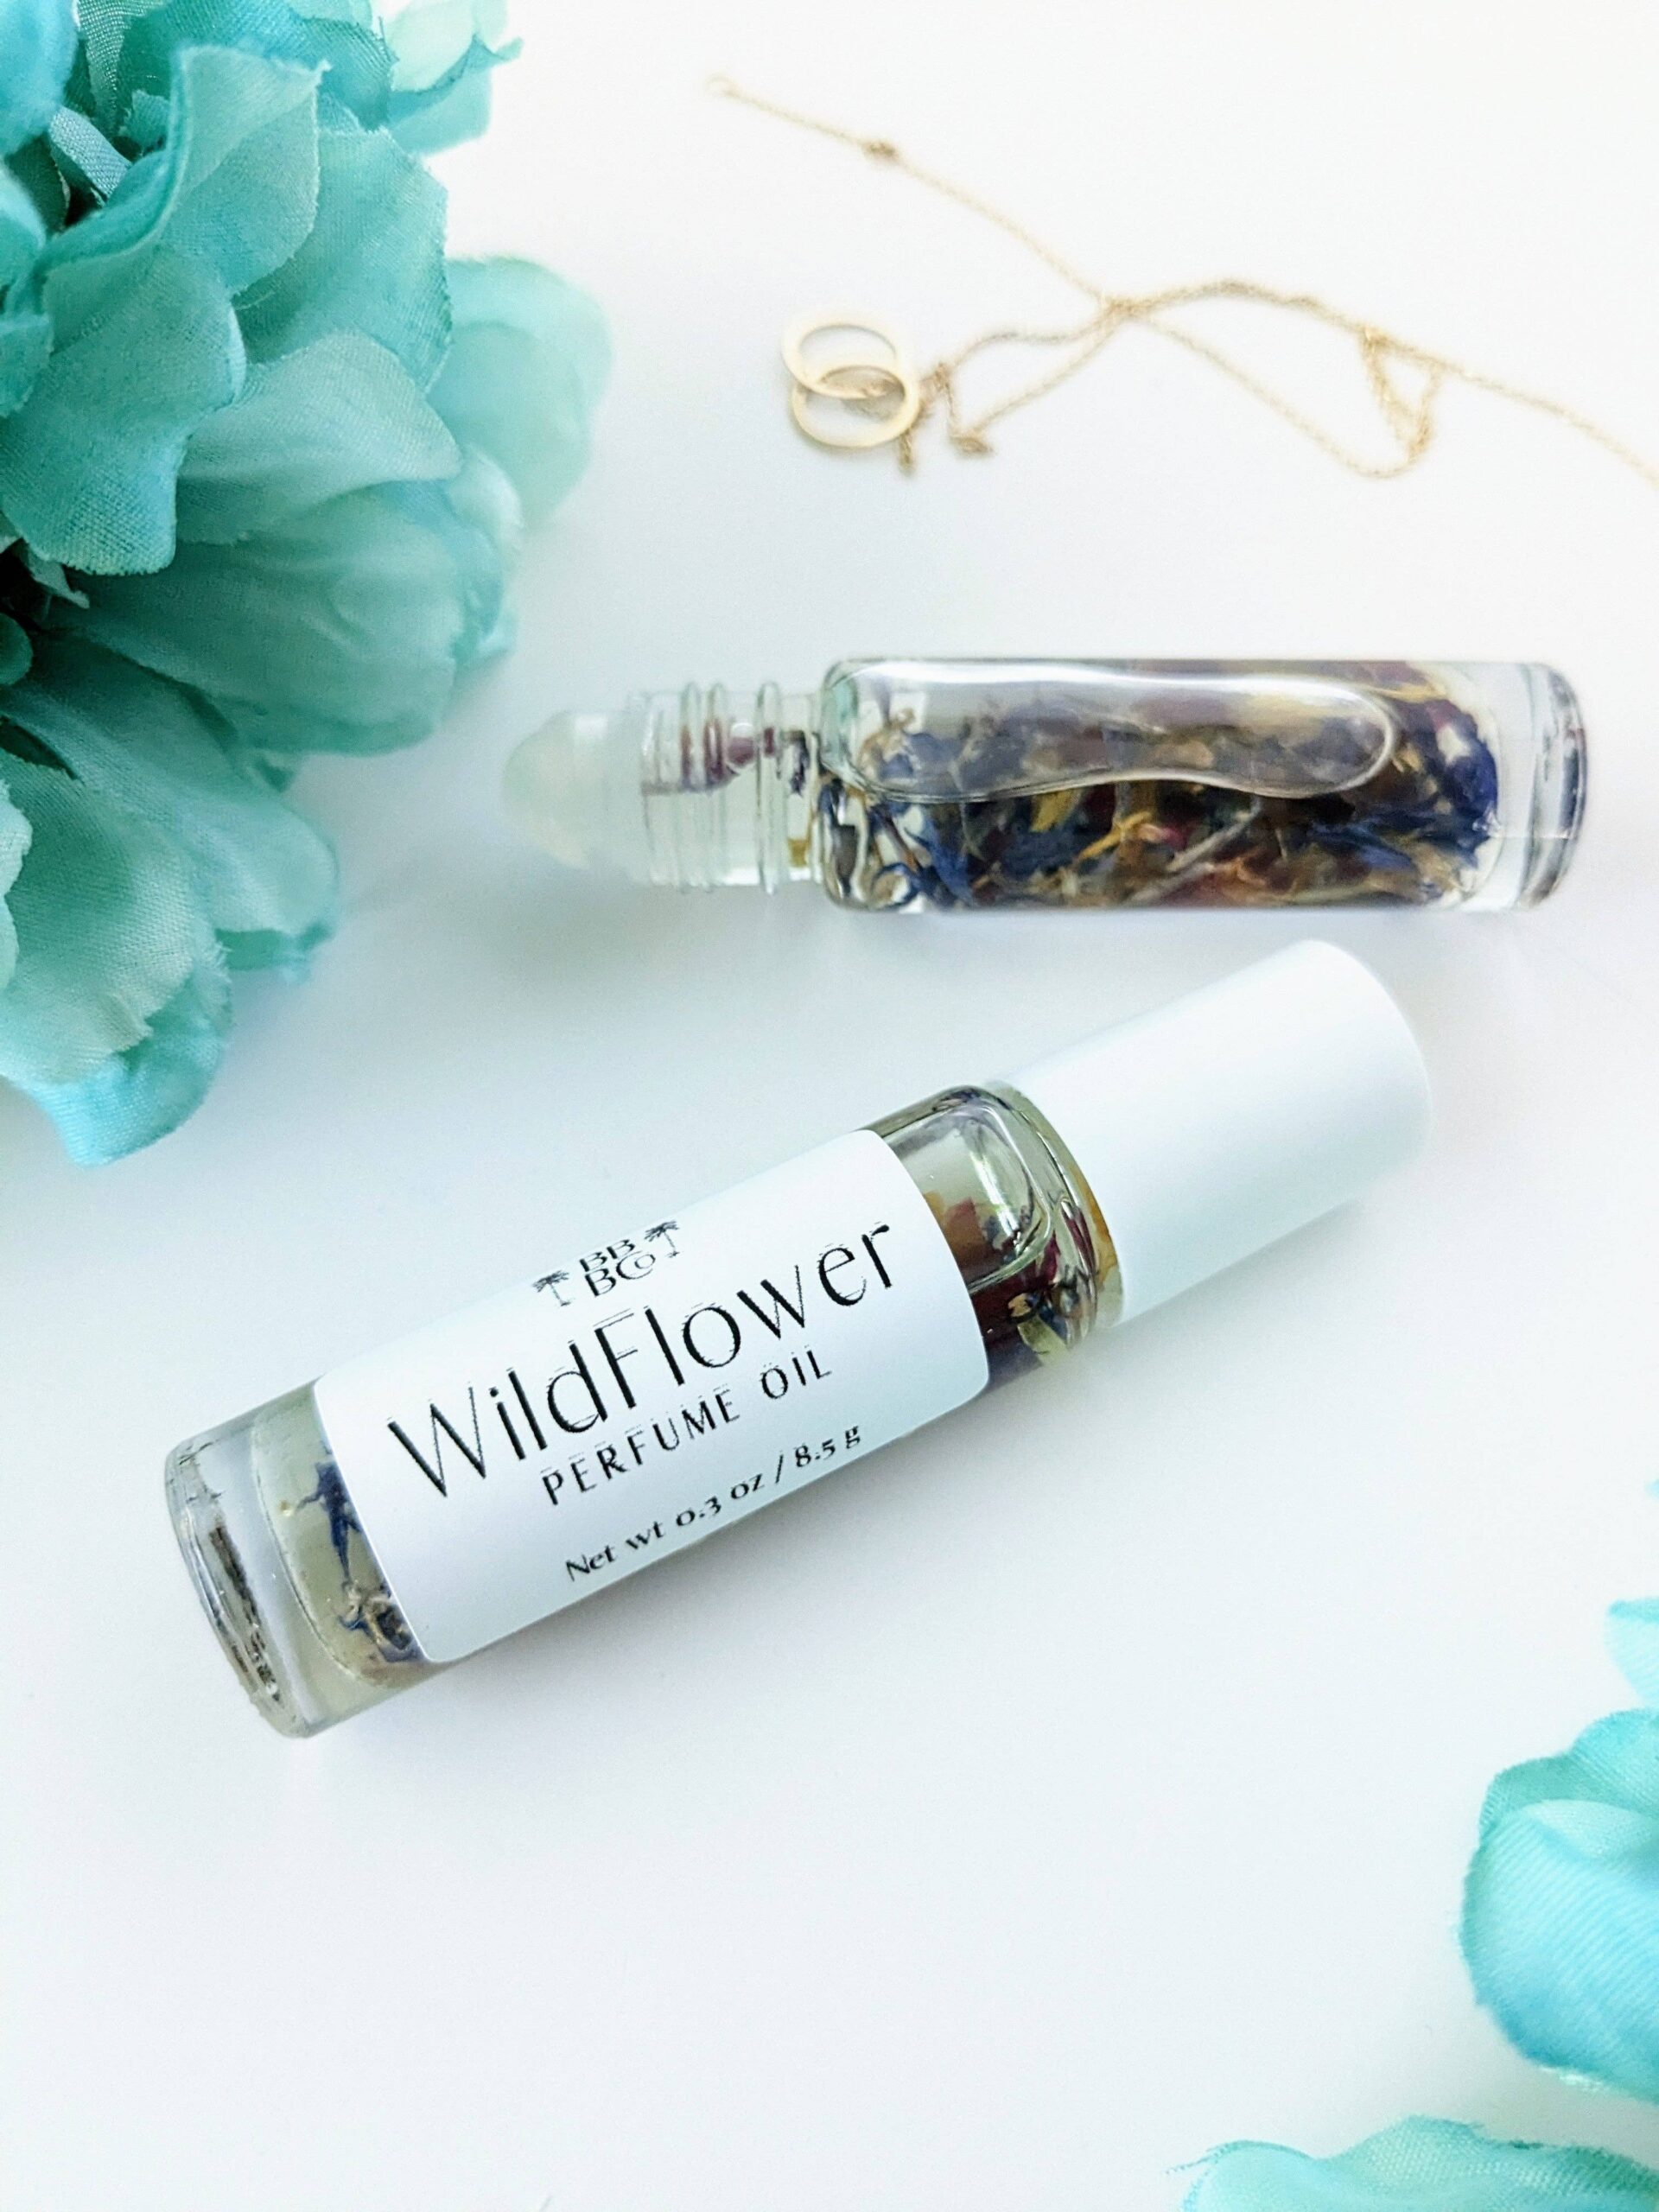 wildflower perfume oil